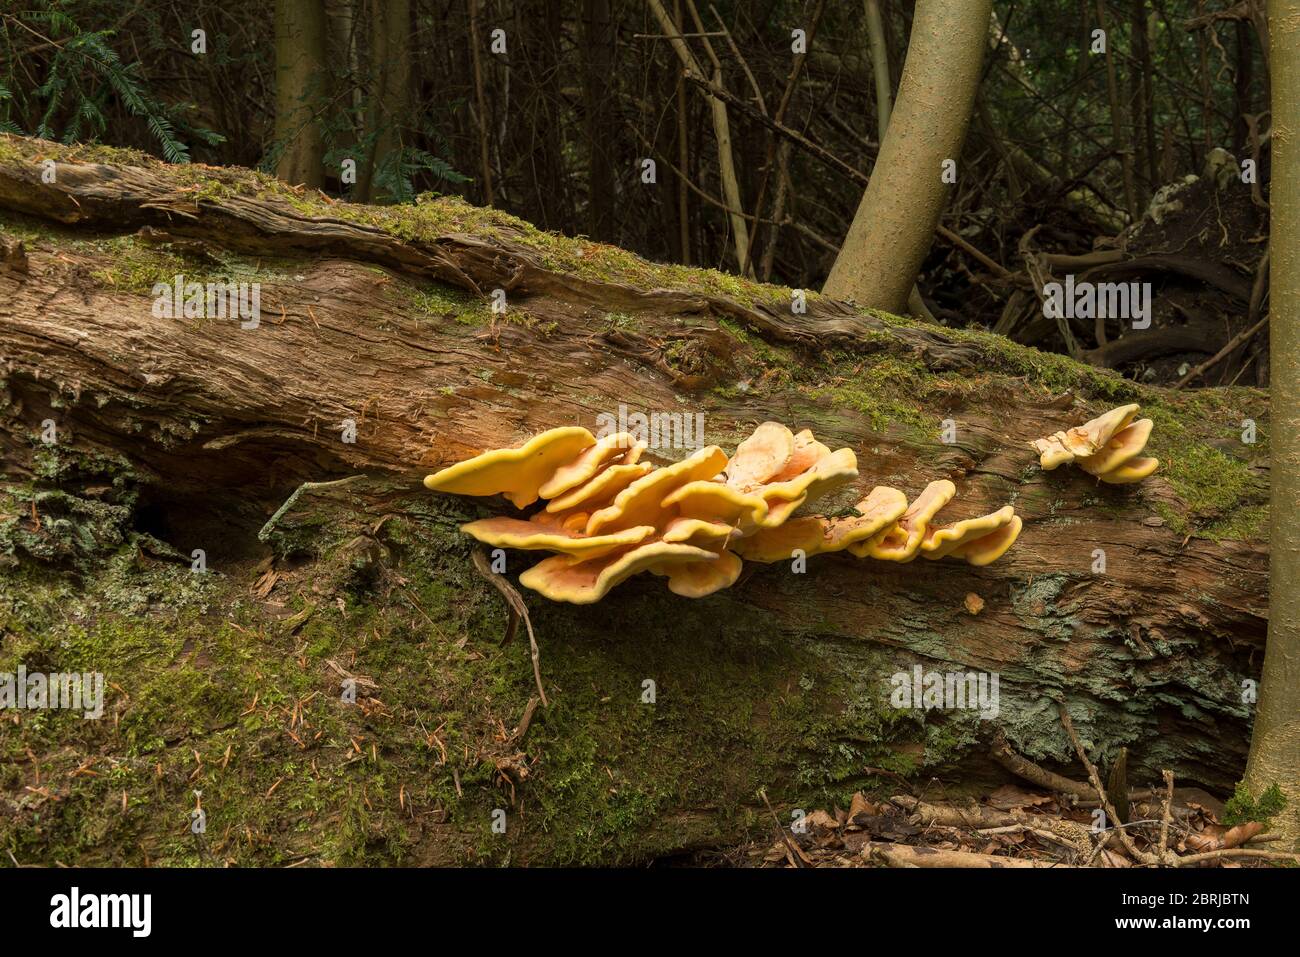 Fruchtkörper als Schichtenregale von Laetiporus sulfureus, einem hellen Polyphore Pilz auf einem gefallenen Edelkastanienbaum in reifen Wäldern Stockfoto